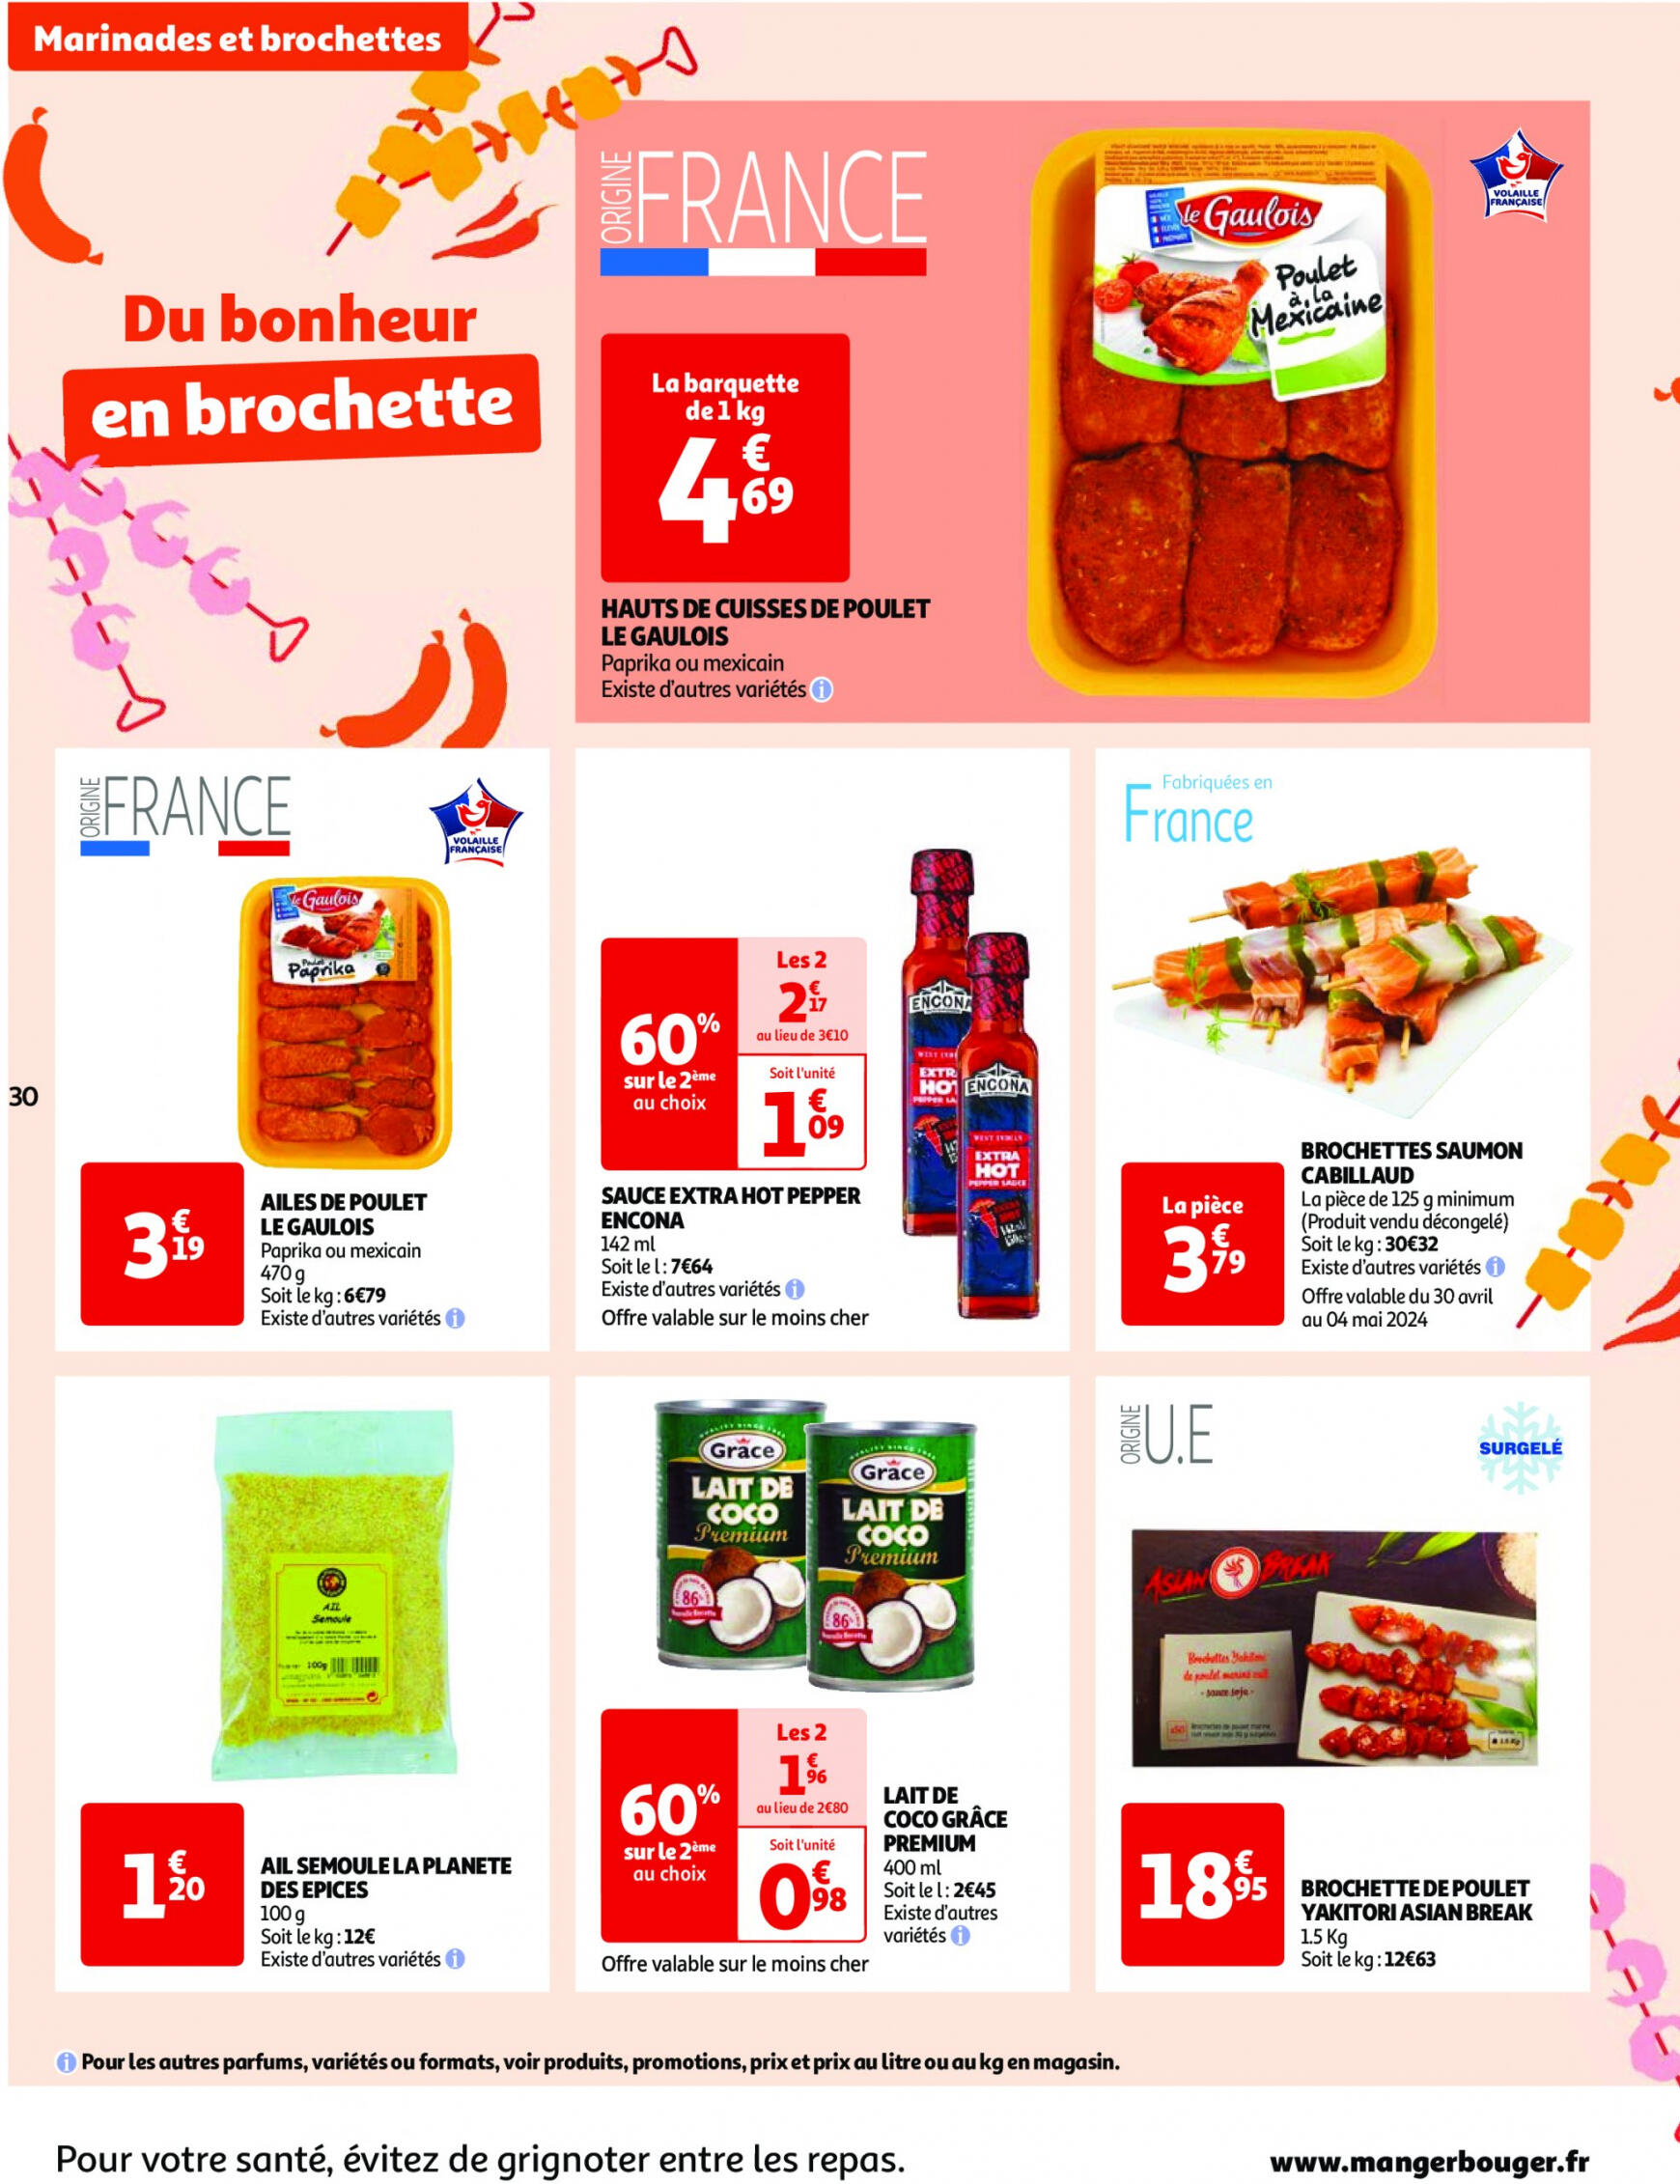 auchan - Prospectus Auchan actuel 30.04. - 06.05. - page: 30